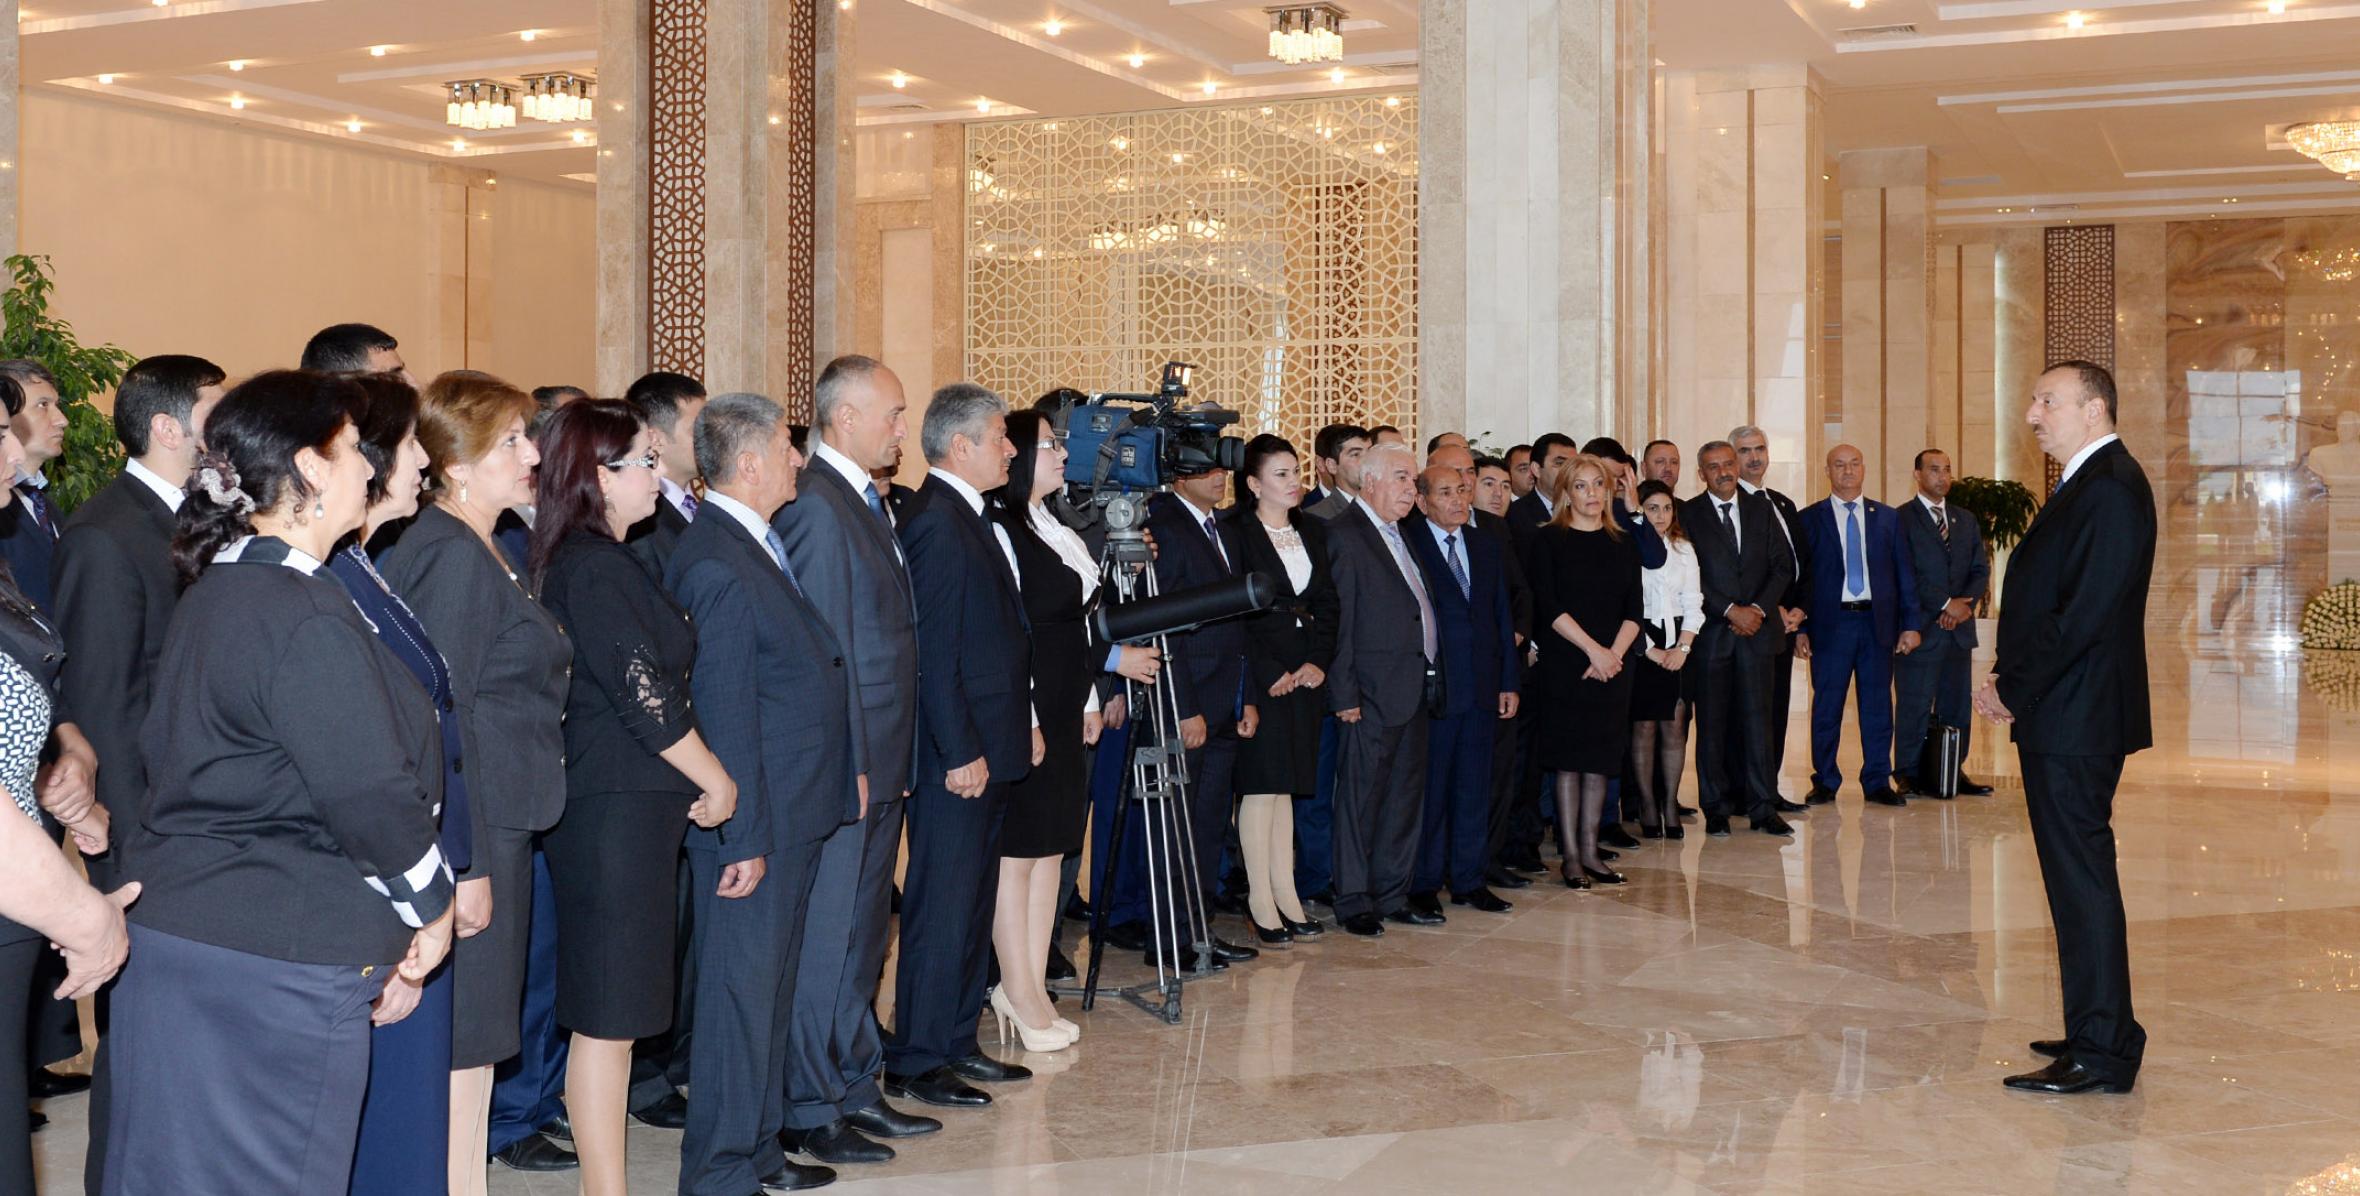 Speech by Ilham Aliyev at the opening of the Heydar Aliyev Center in Neftchala